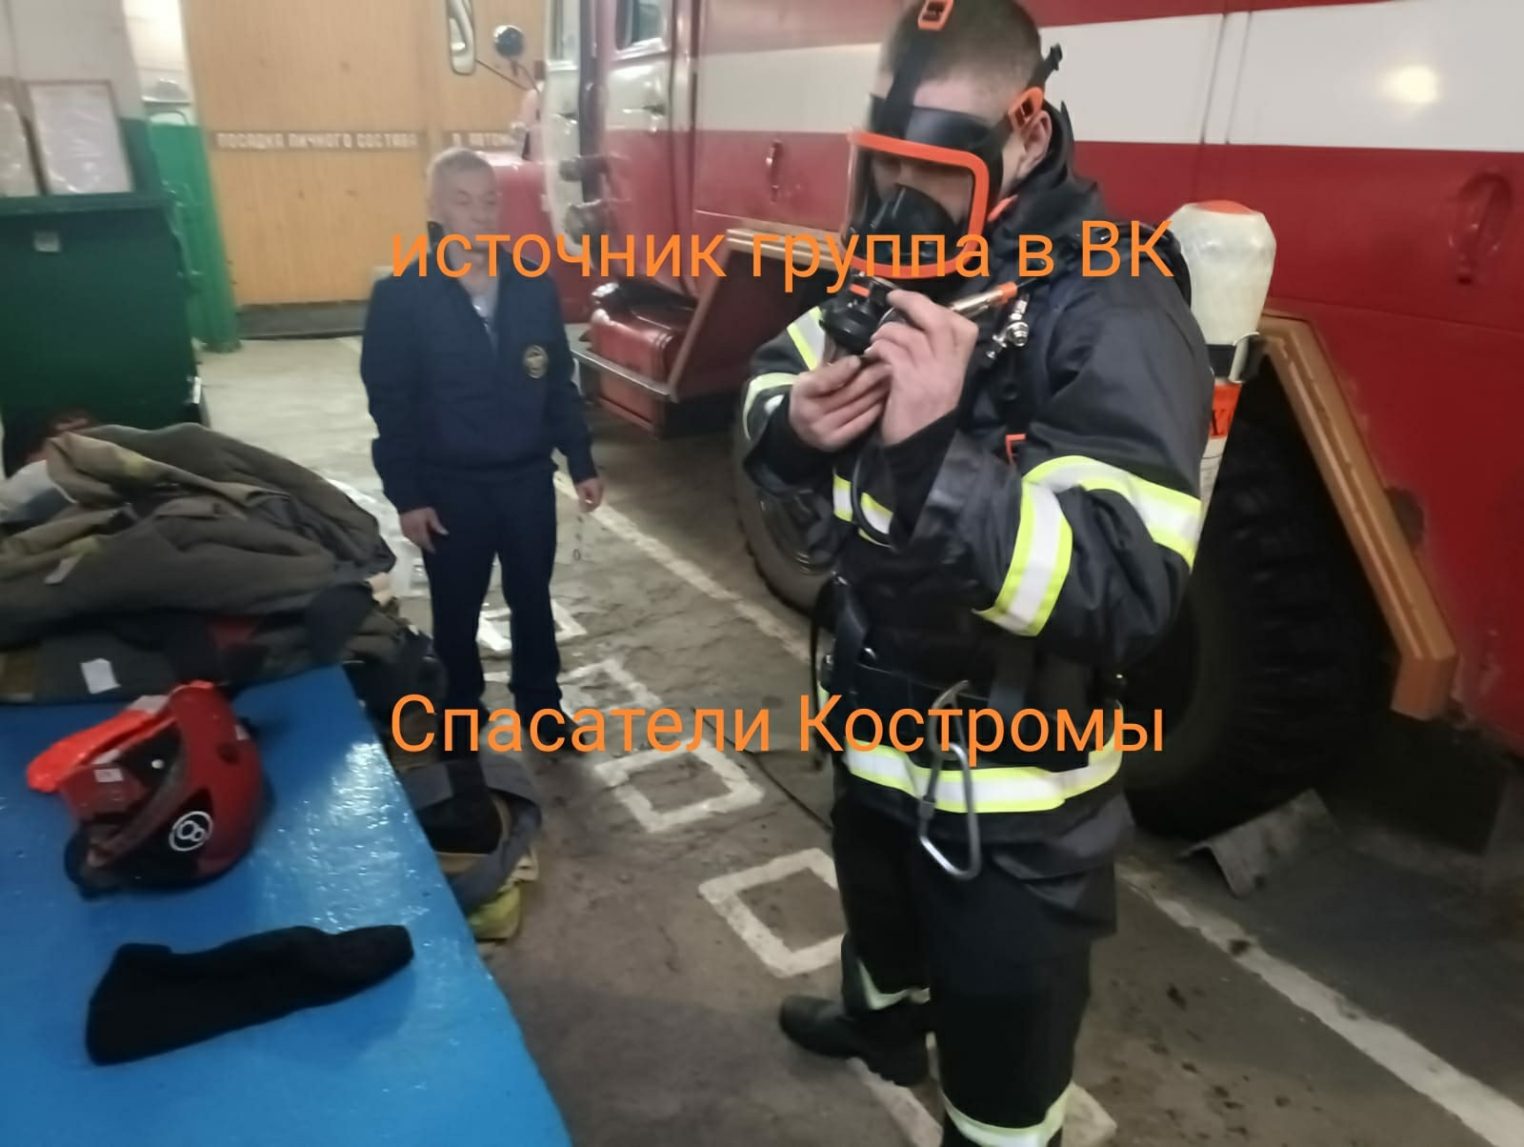 Костромские спасатели получили новое оборудование